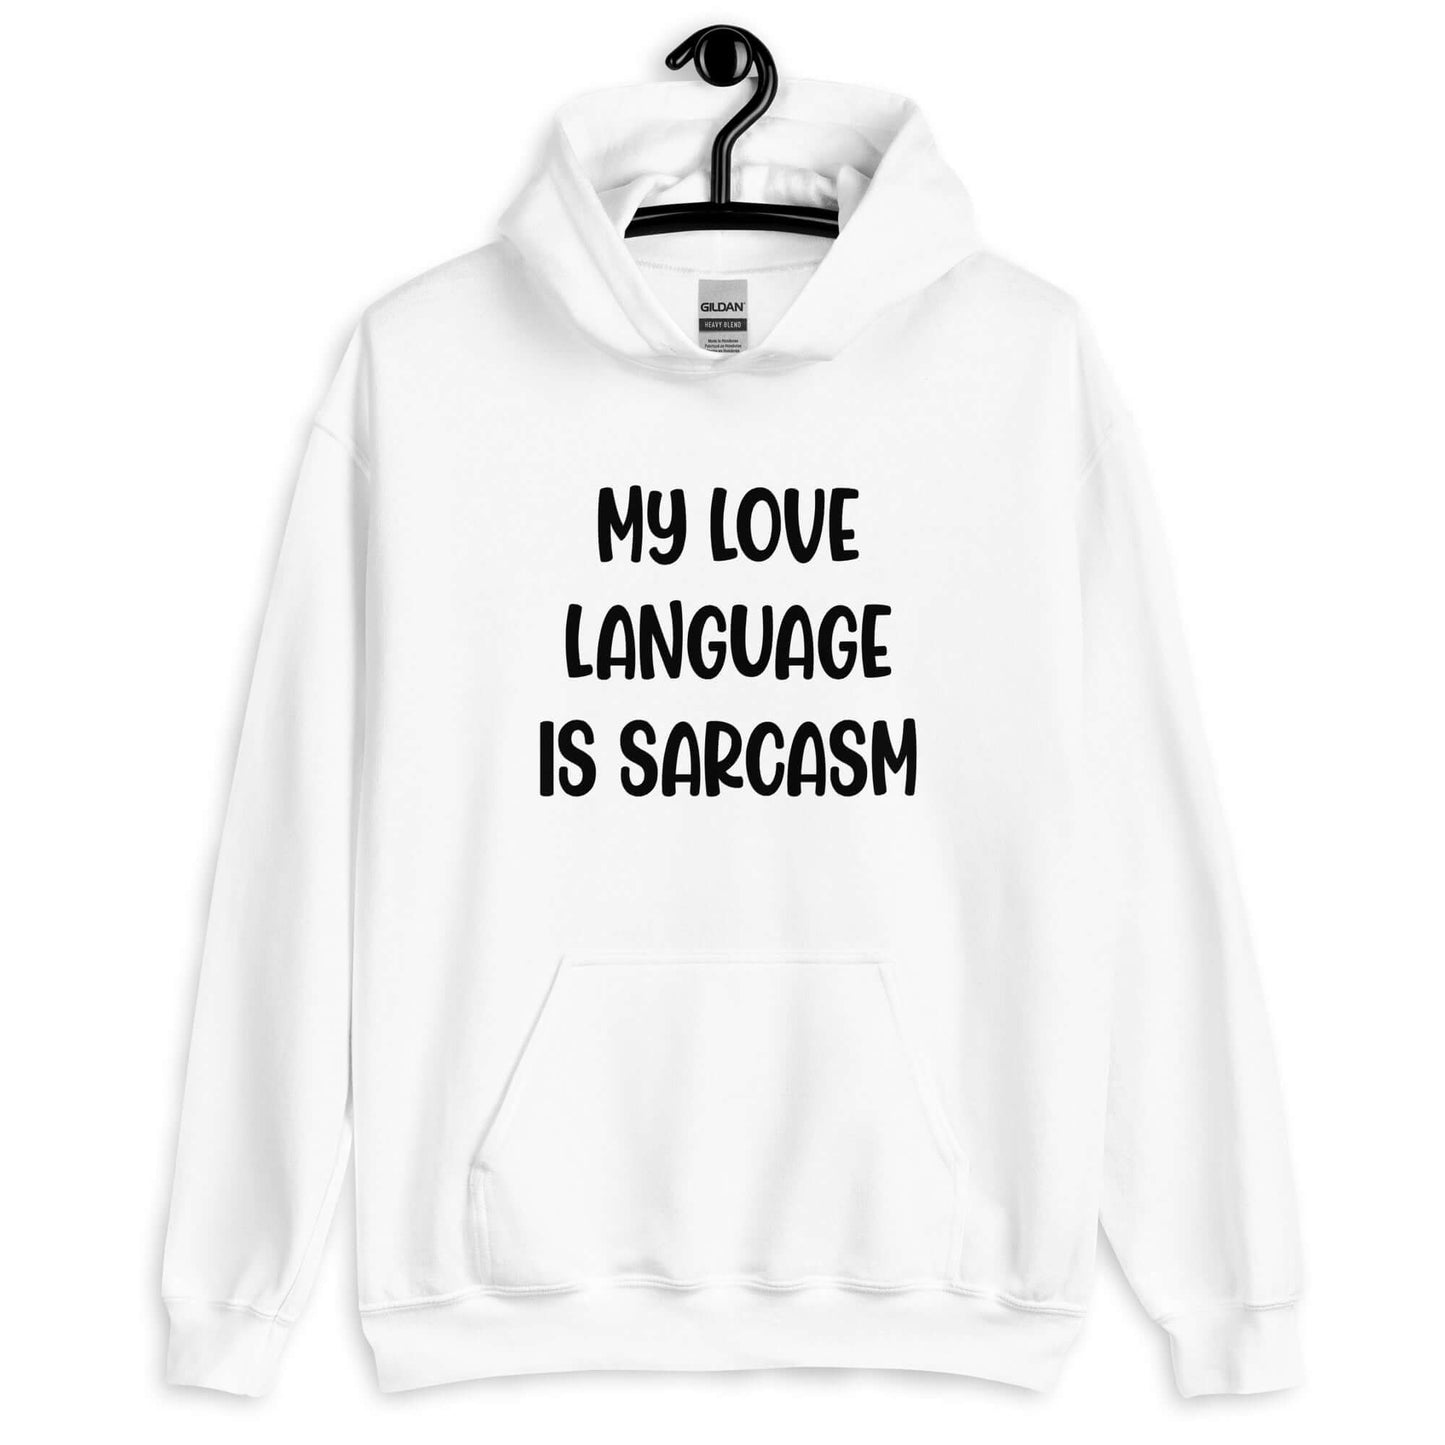 My love language is sarcasm hoodie